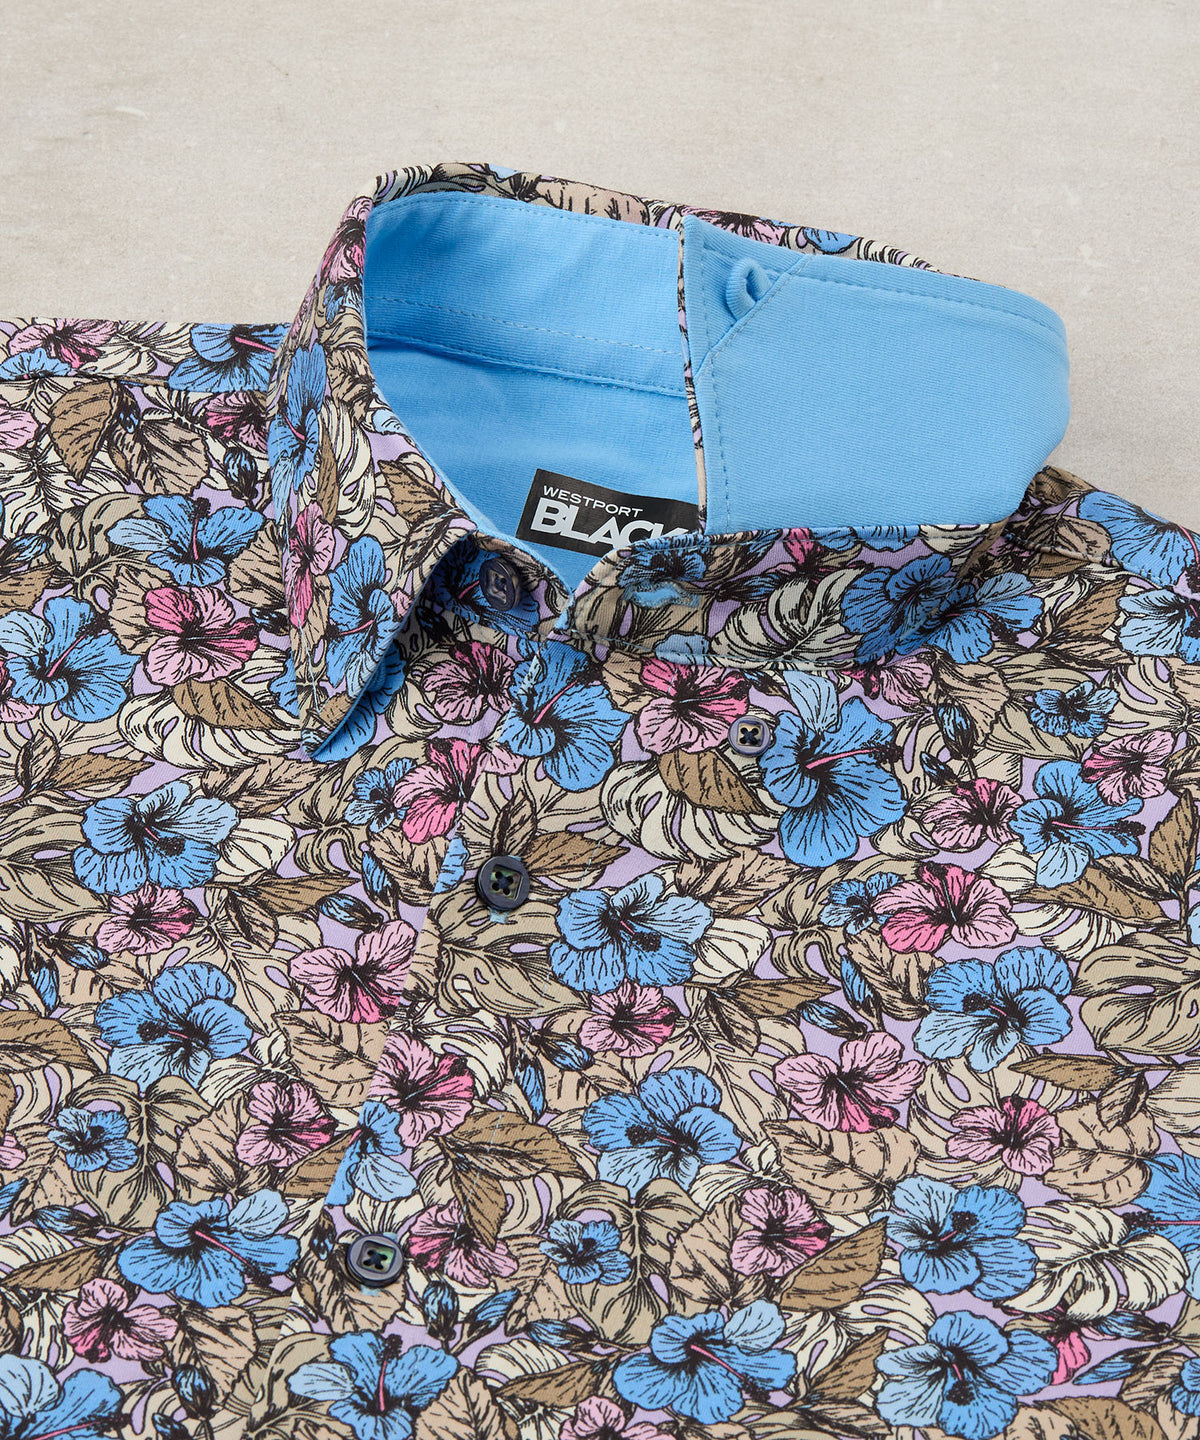 Westport Black Button Front Tropical Print Knit Shirt, Men's Big & Tall